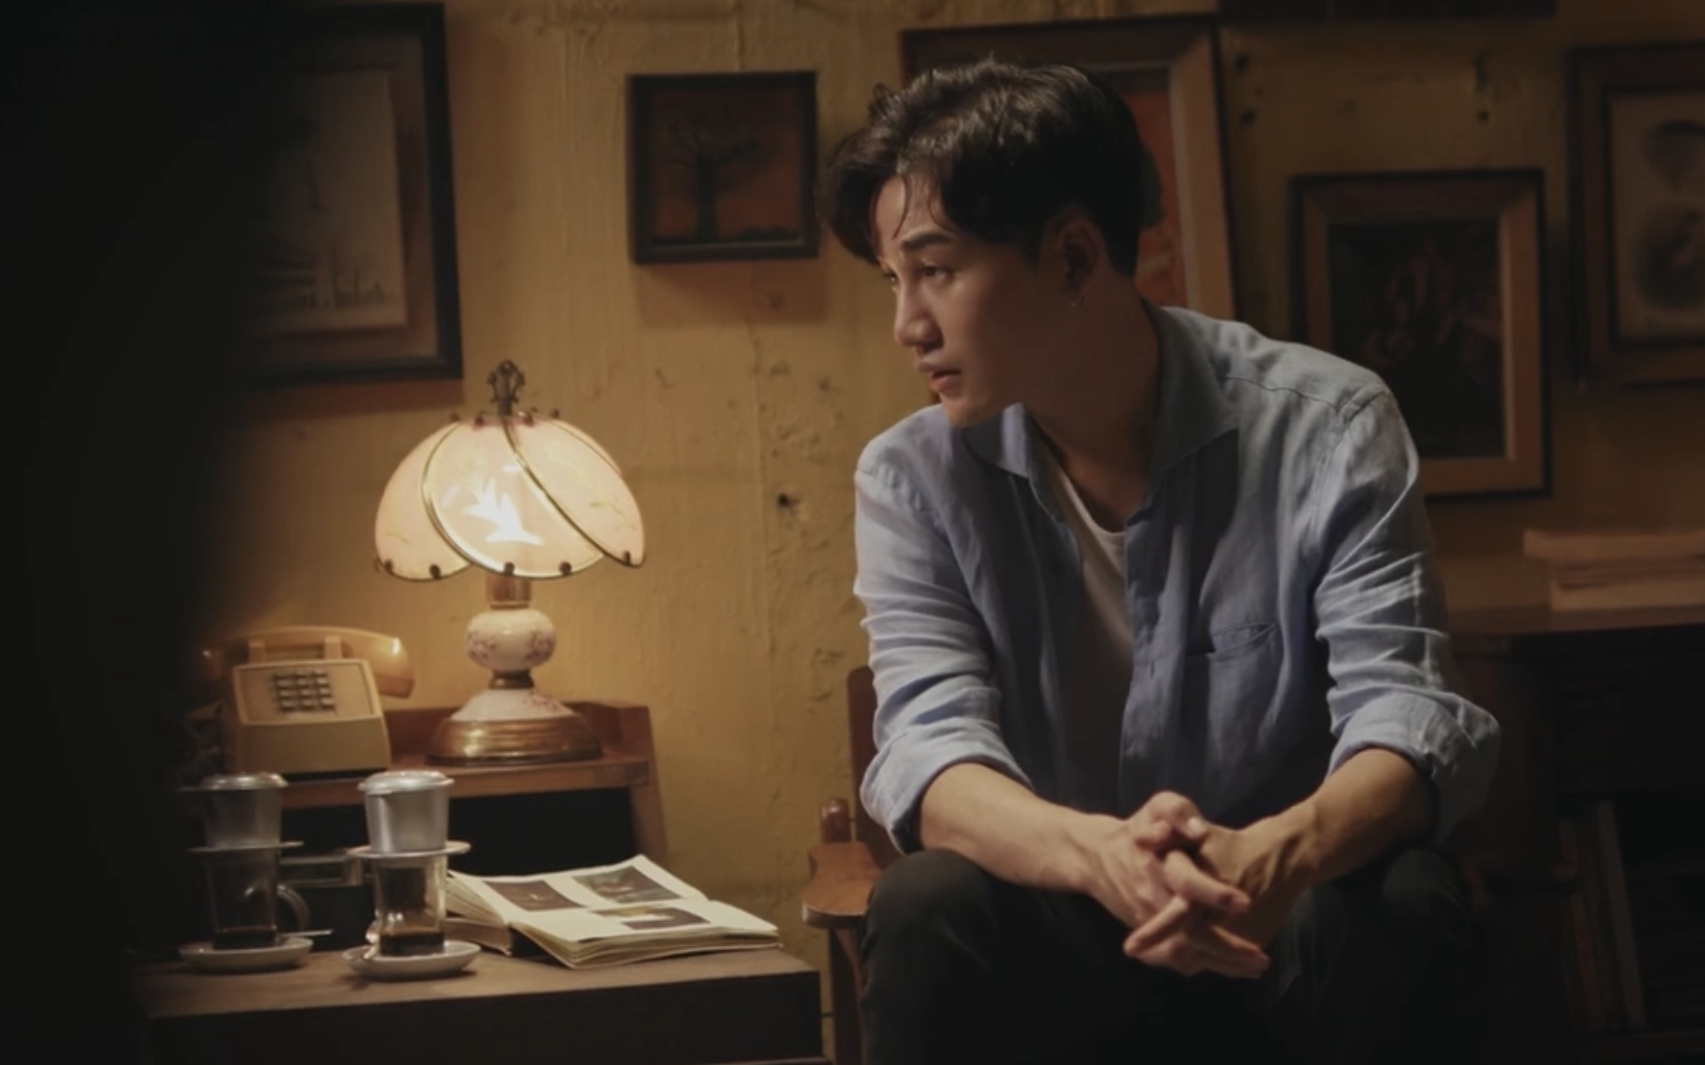 Xúc động xem MV nhạc phim "Bố già" do Trấn Thành đích thân viết lời, Ali Hoàng Dương thể hiện đầy cảm xúc